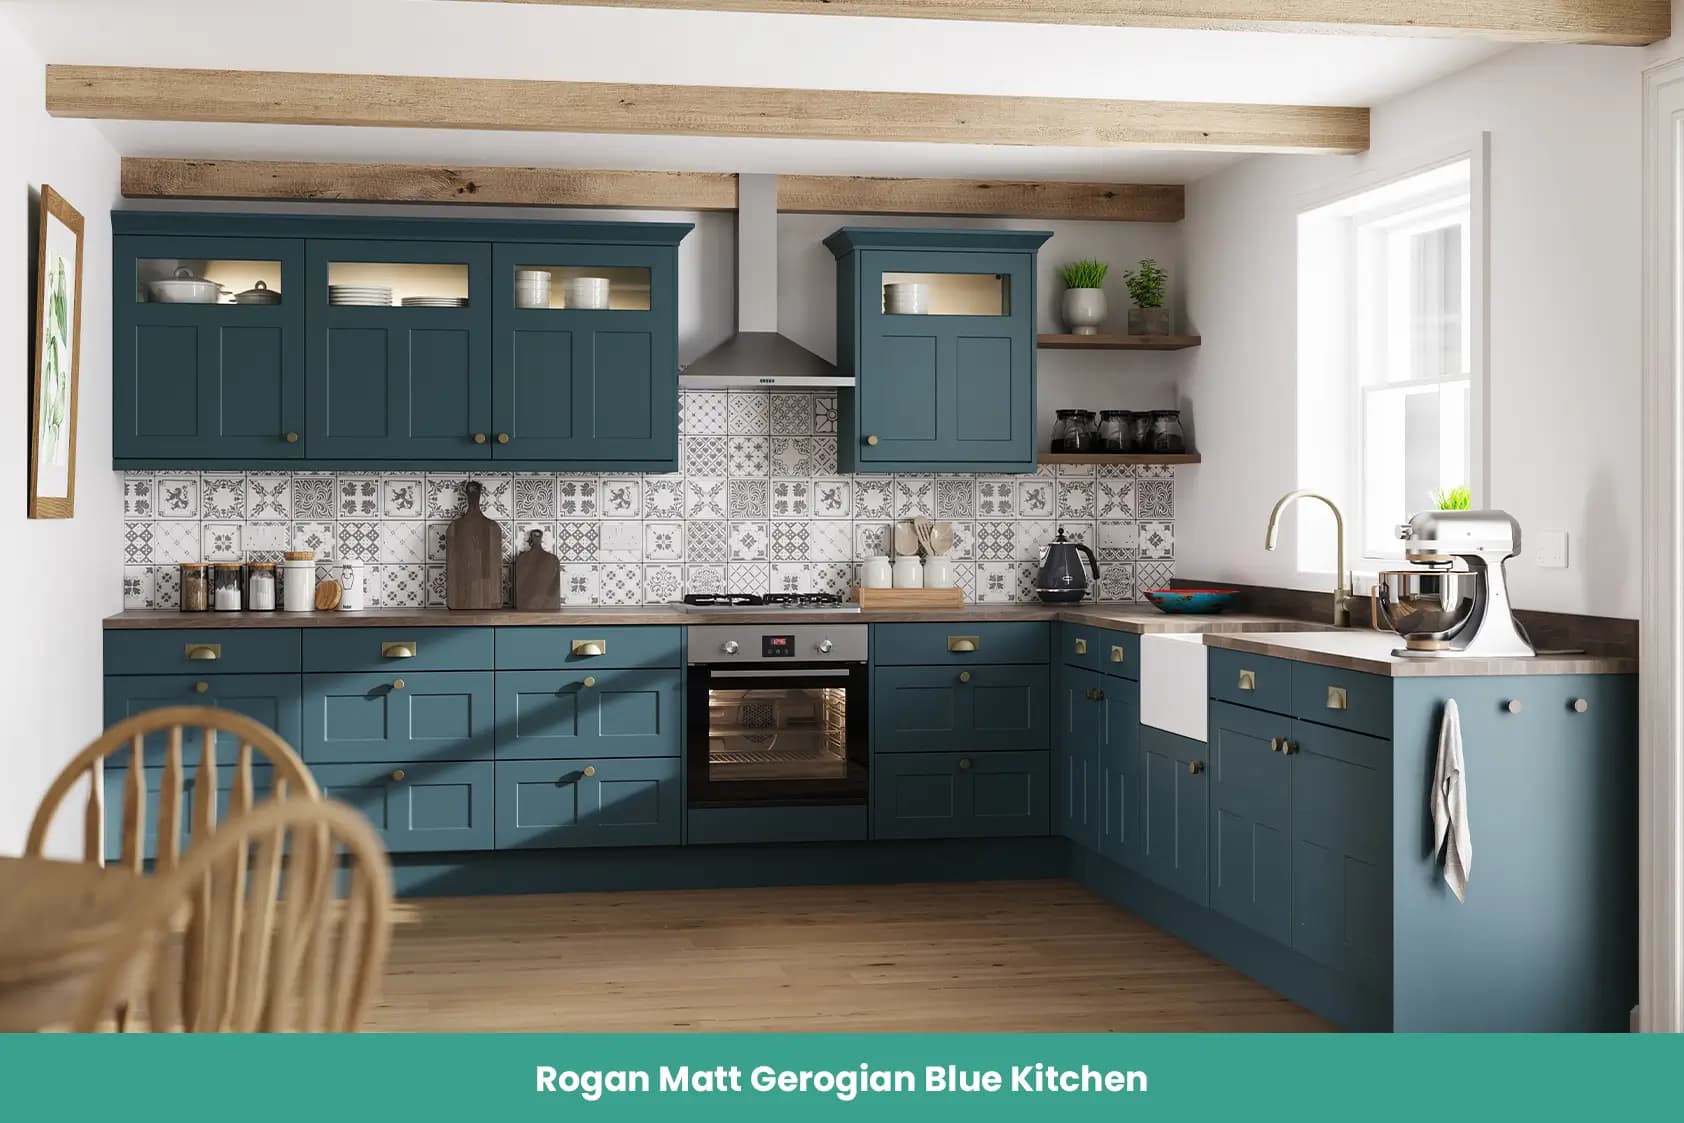 Rogan Matt Gerogian Blue Kitchen